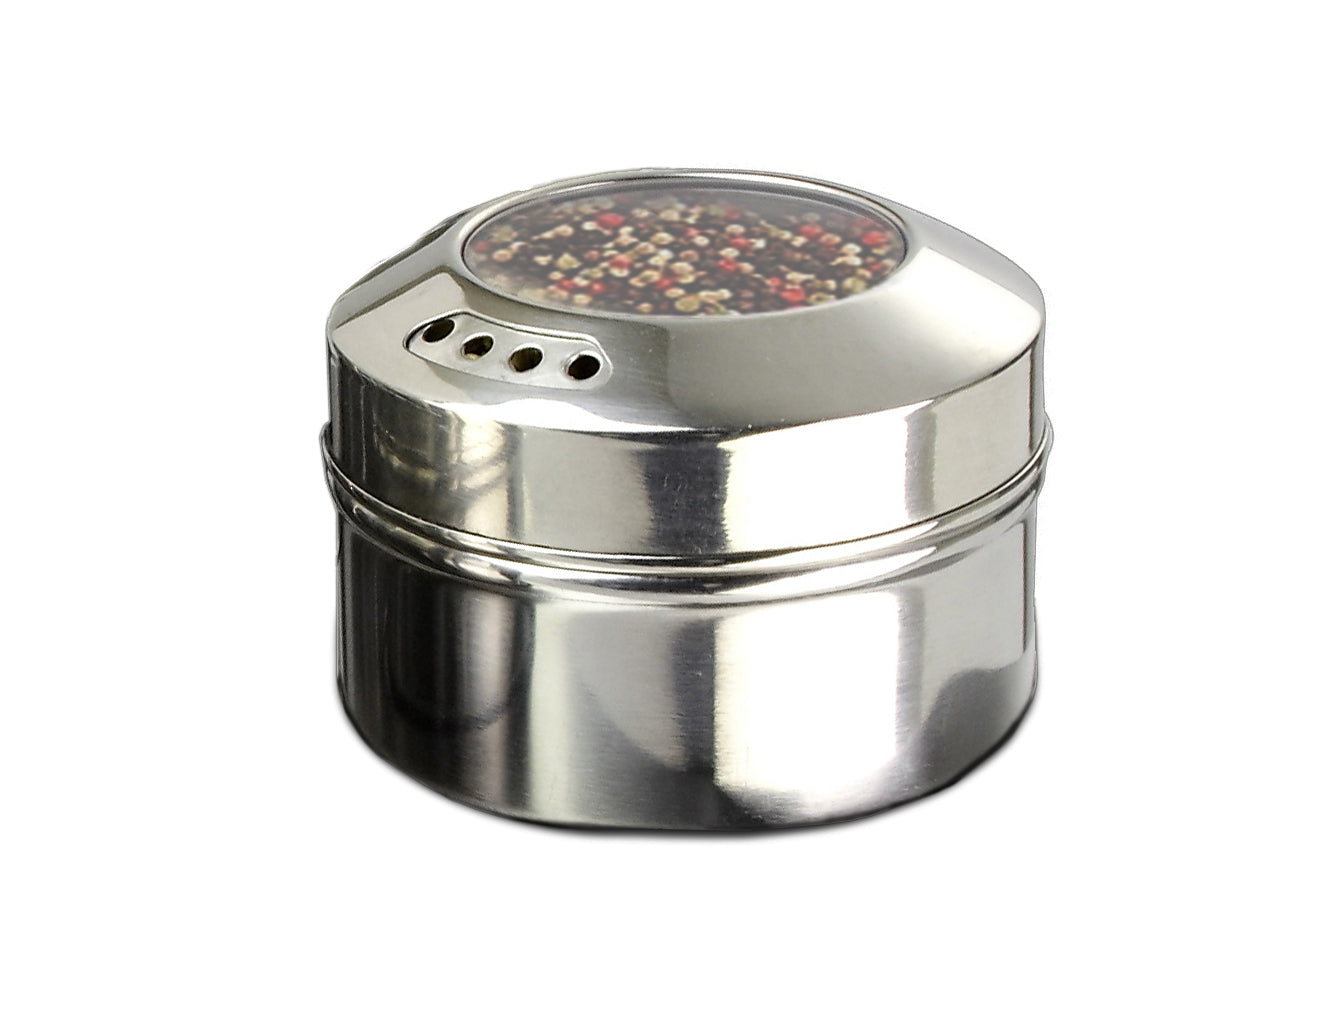 Boîte à épices magnétique Cuisinox / Shaker